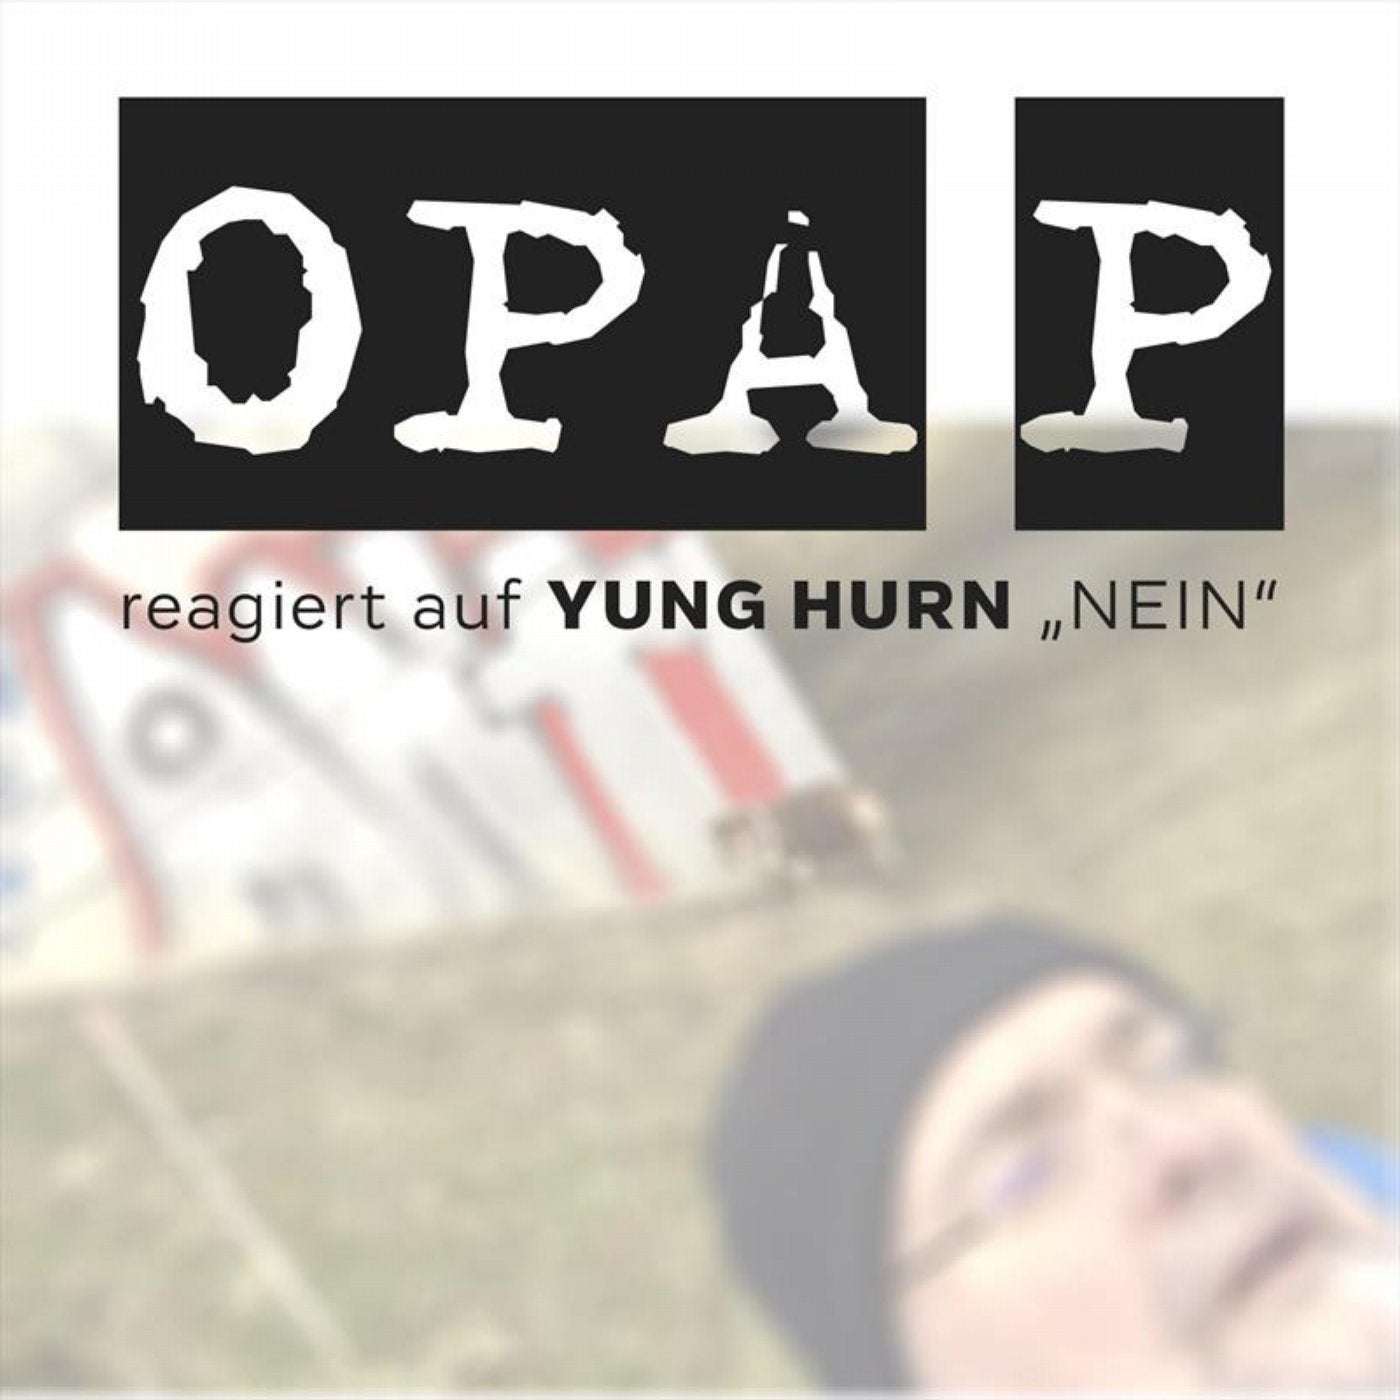 Opa P reagiert auf Yung Hurn - Nein